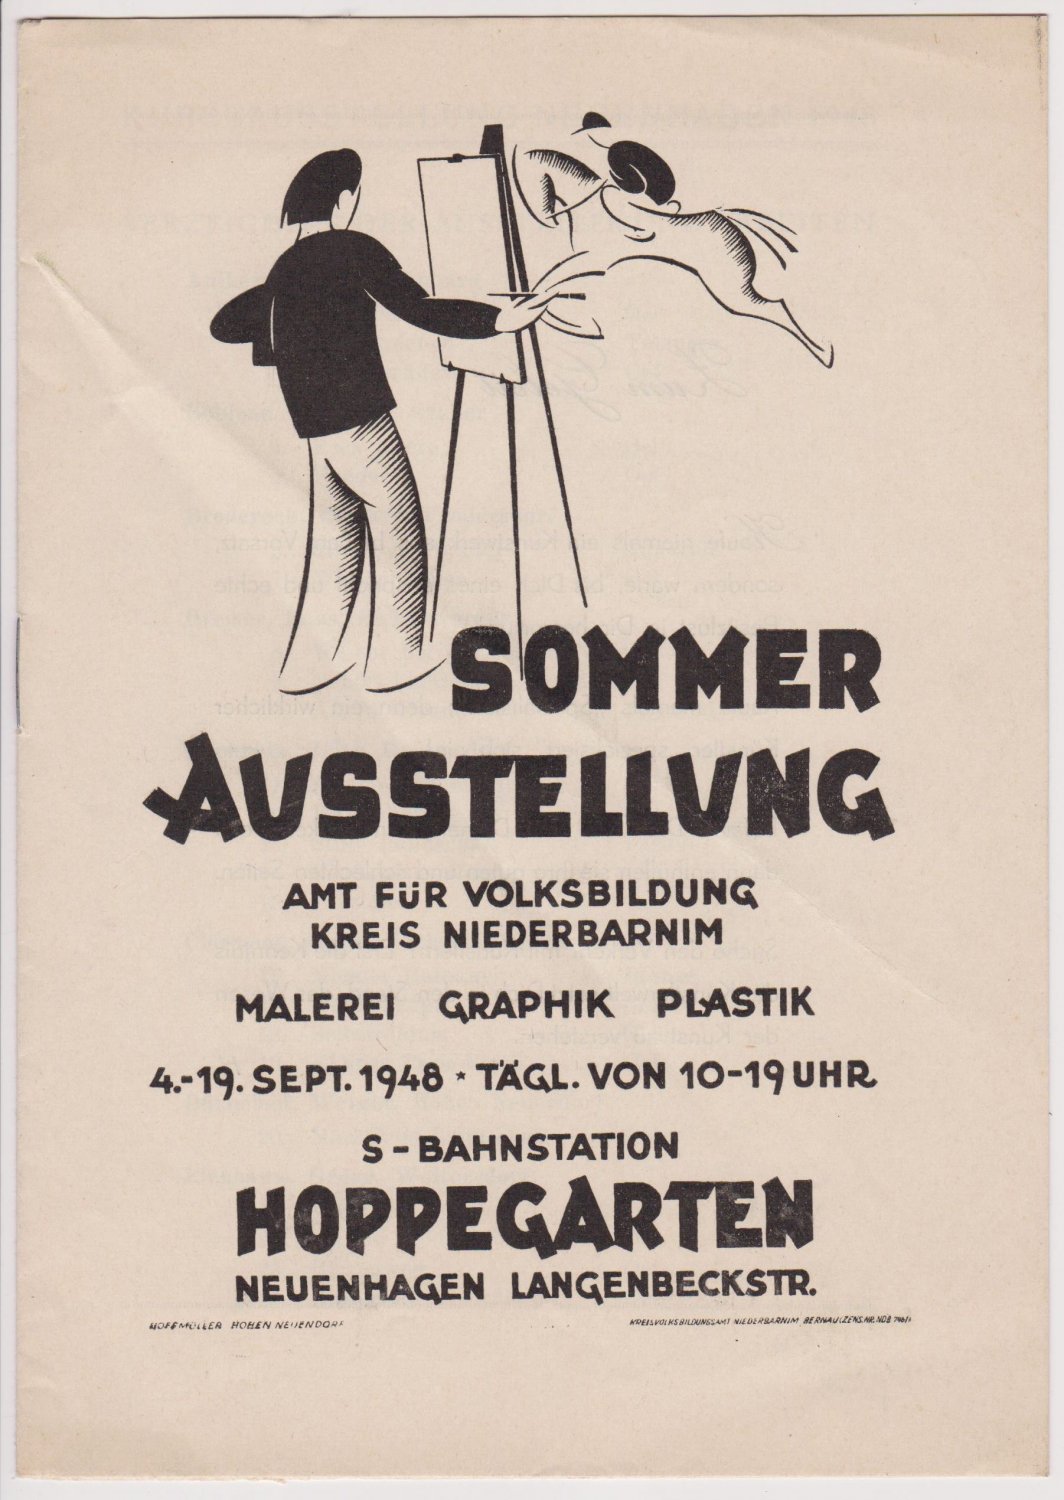 AMT FÜR VOLKSBILDUNG KREIS NIEDERBARNIM:  Sommerausstellung Malerei Graphik Plastik. 4.-19. September 1948, S-Bahnstation Hoppegarten, Neuenhagen. 